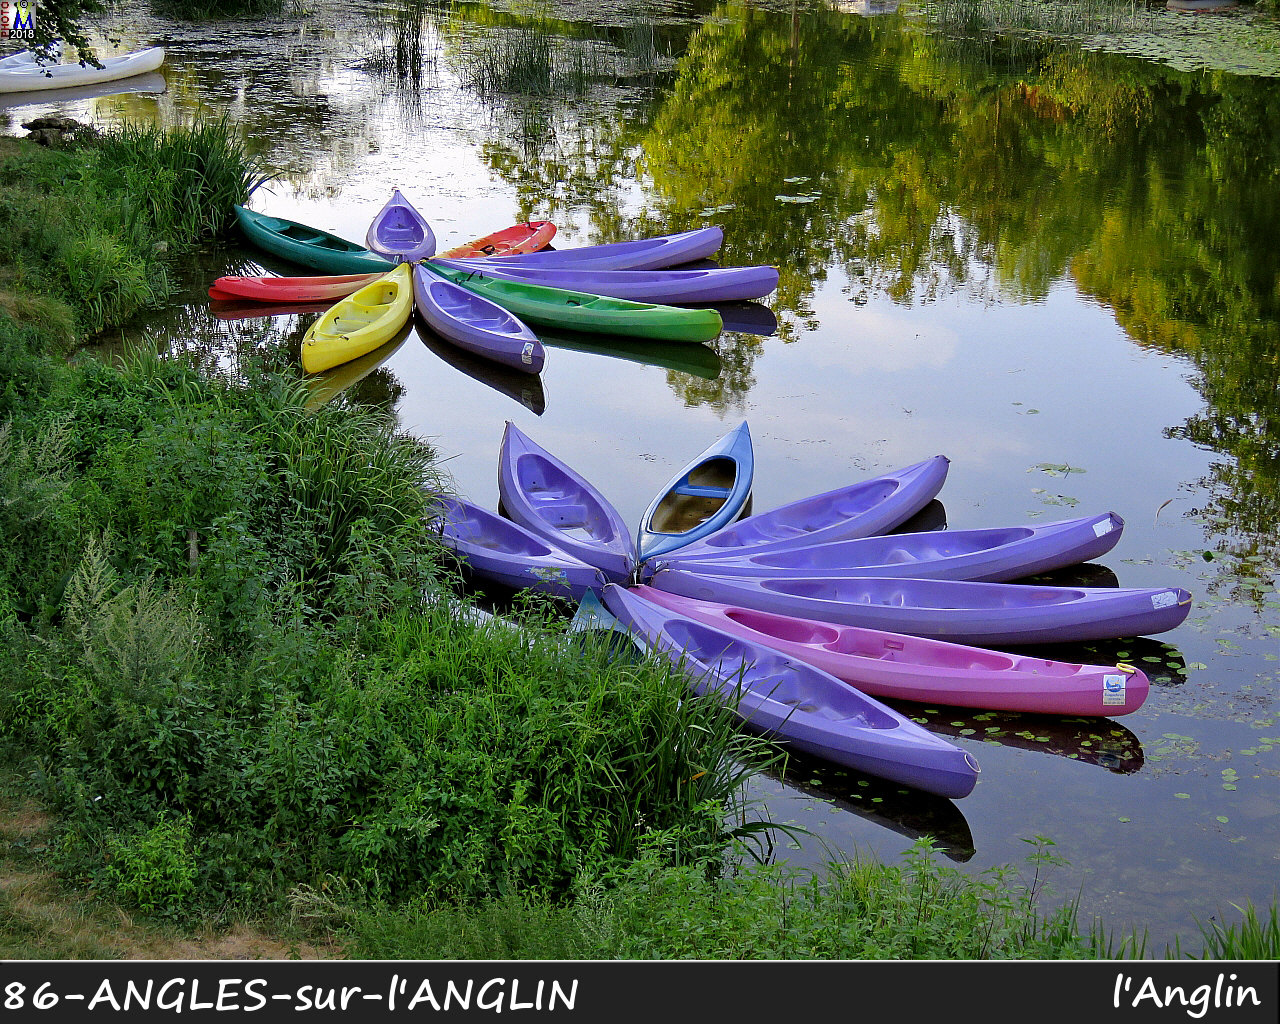 86ANGLES-S-ANGLIN_Anglin_1012.jpg